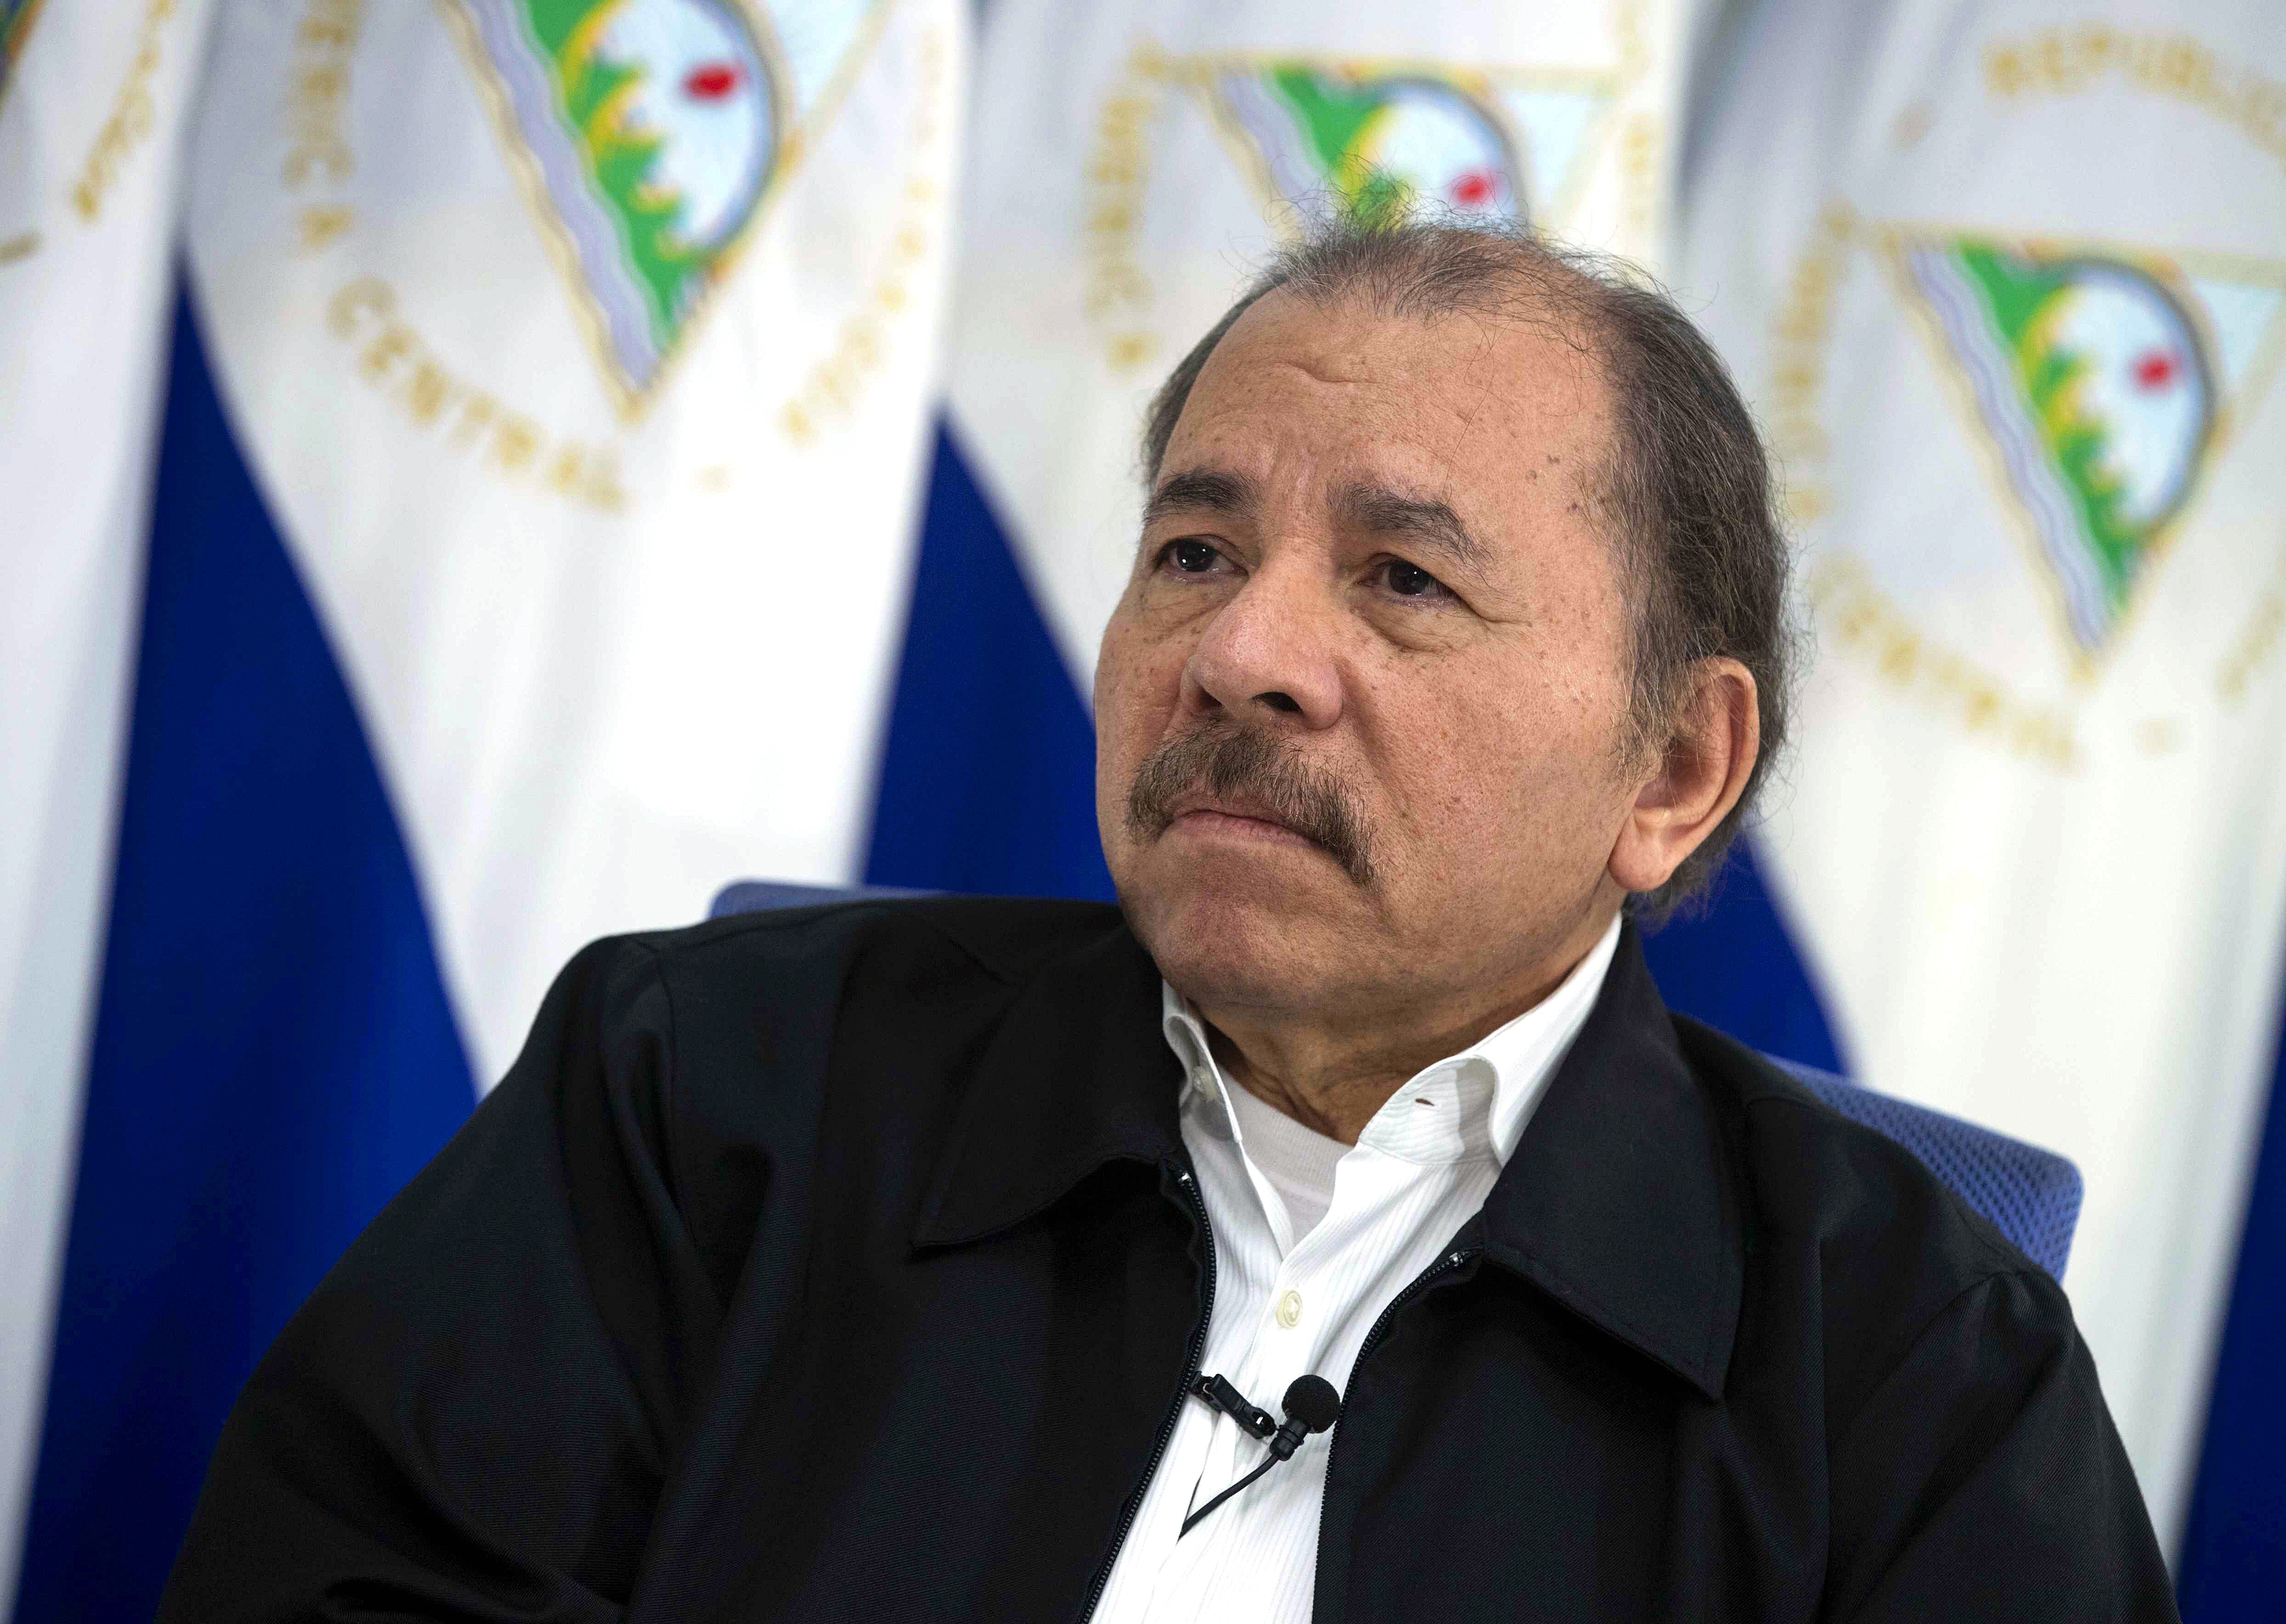 Daniel Ortega, el exguerrillero que sigue aferrado al poder en Nicaragua